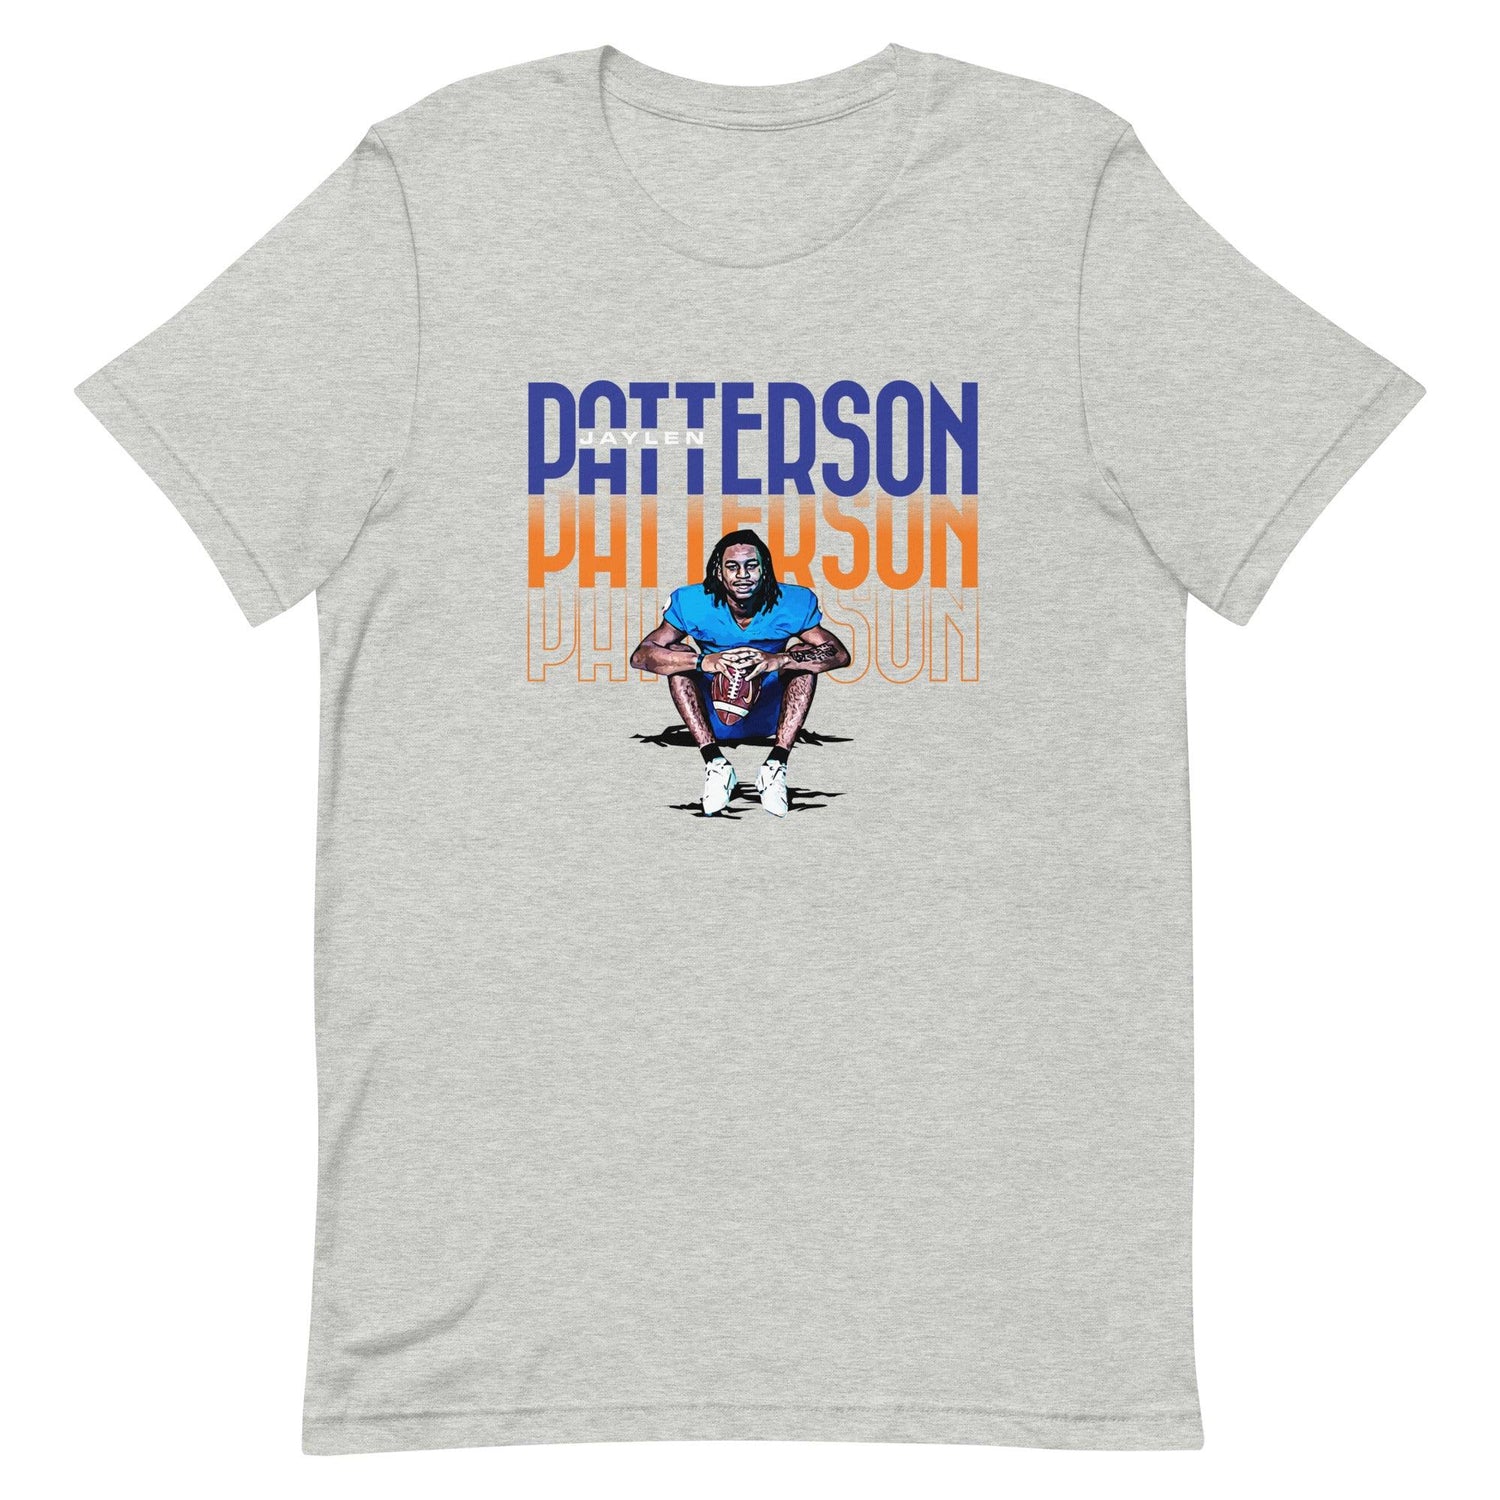 Jaylen Patterson "Gameday" t-shirt - Fan Arch